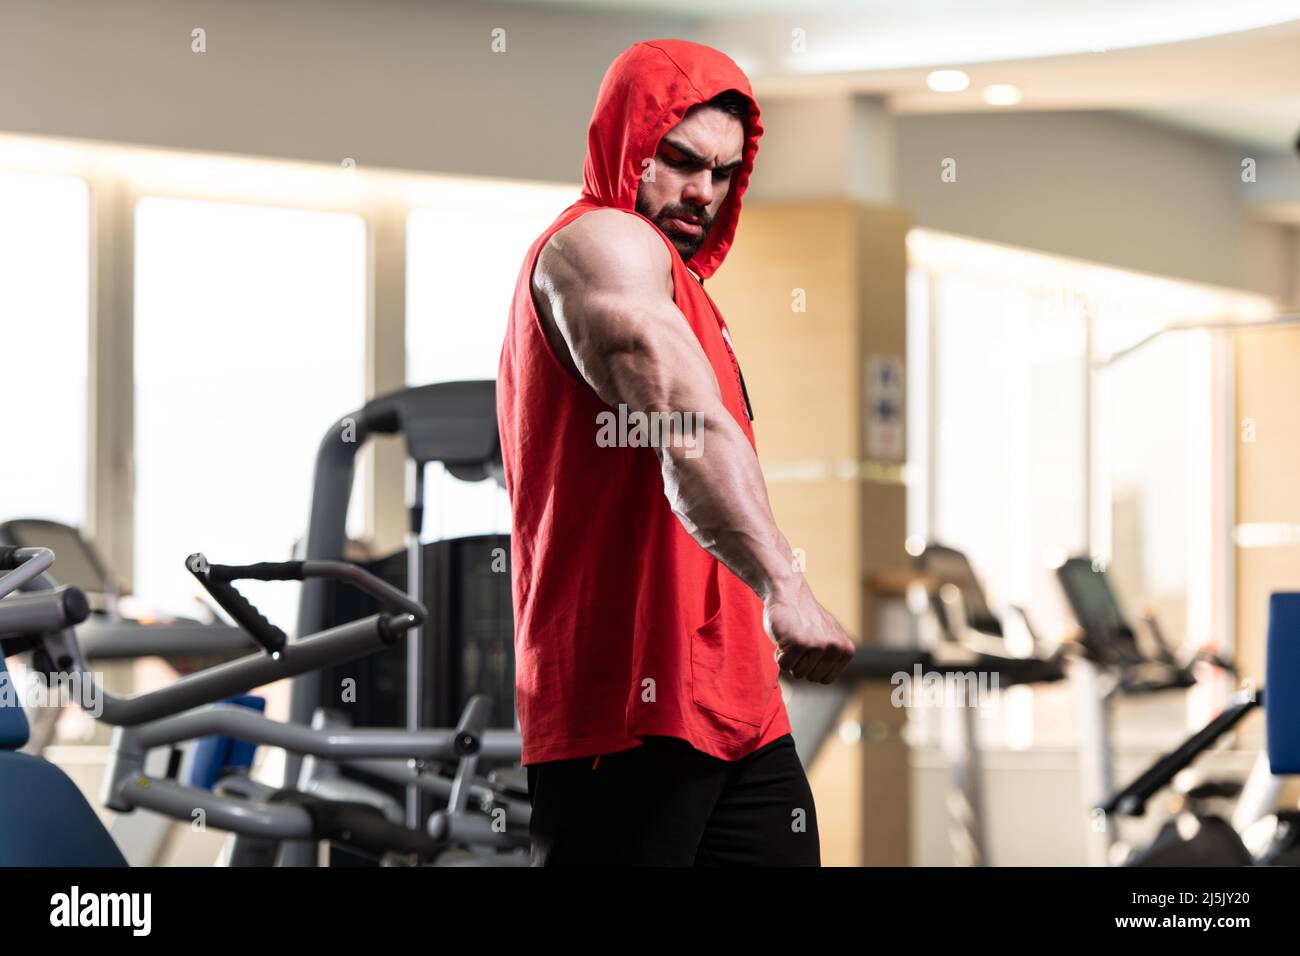 Hombre joven De pie fuerte en el gimnasio y músculos flexibles en una sudadera con capucha roja - Muscular Athletic Bodybuilder Fitness Modelo posando después los ejercicios Fotografía de stock - Alamy